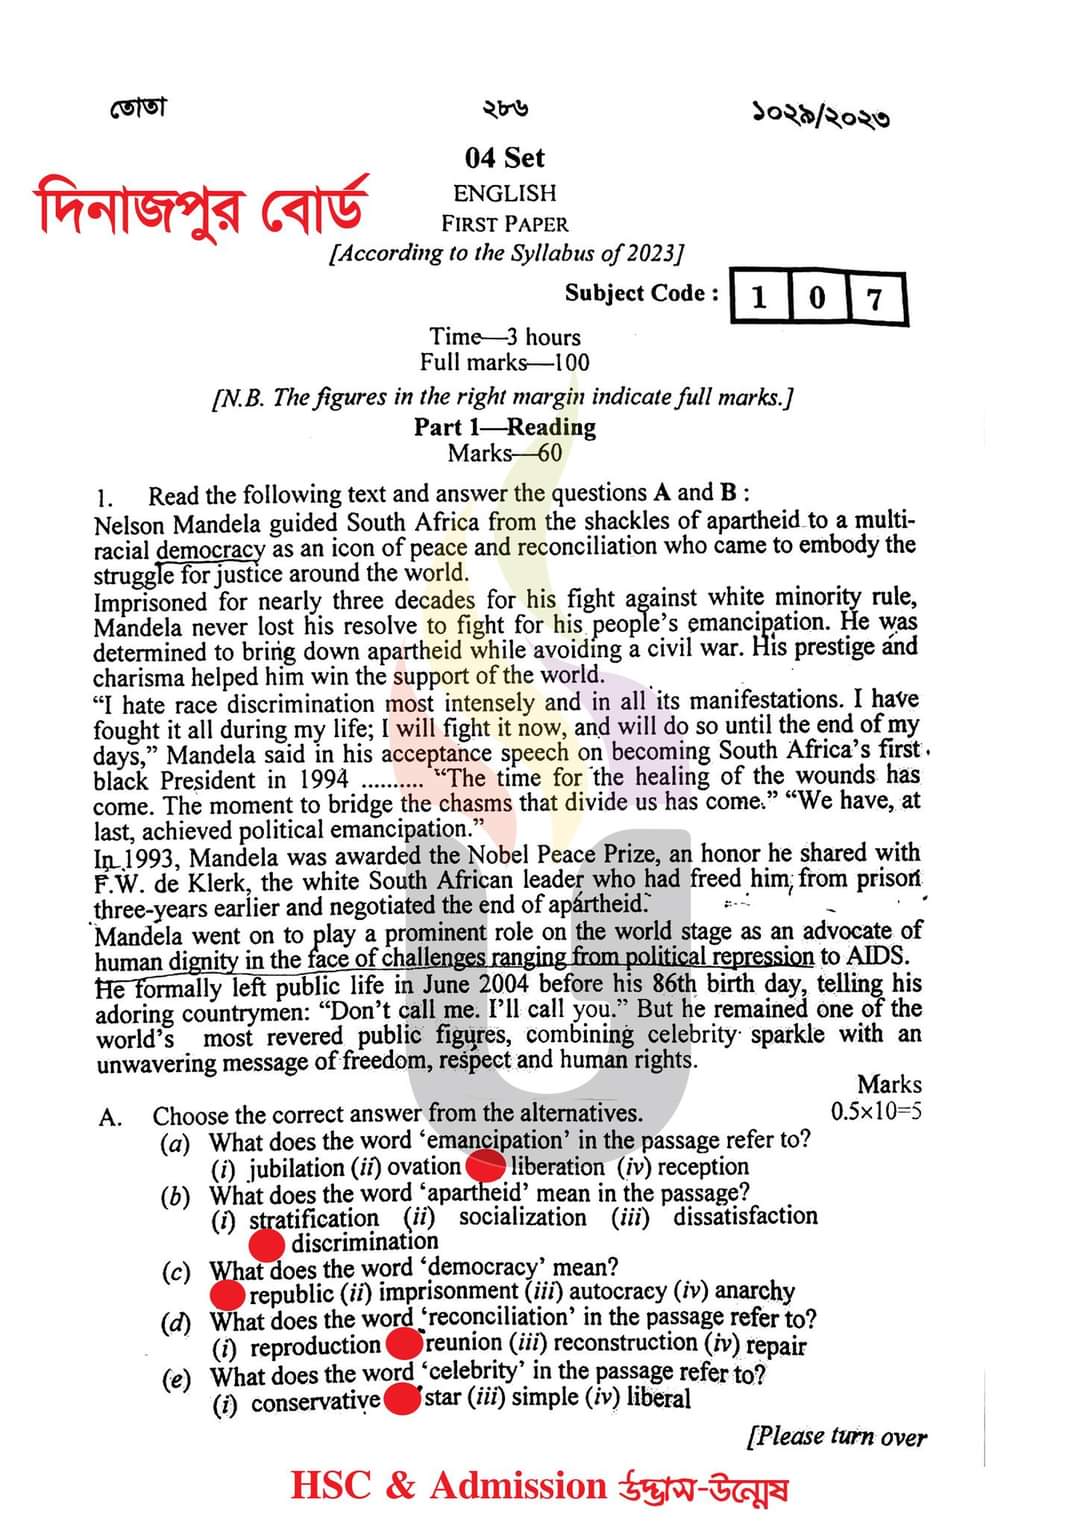 দিনাজপুর বোর্ড এইচএসসি ইংরেজি ১ম পএ বহুনির্বাচনি প্রশ্ন সমাধান ২০২৩ | এইচএসসি ইংরেজি ১ম পএ প্রশ্ন সমাধান ২০২৩ | Dinajpur broad hsc English 1st paper exam Mcq Solution 2023